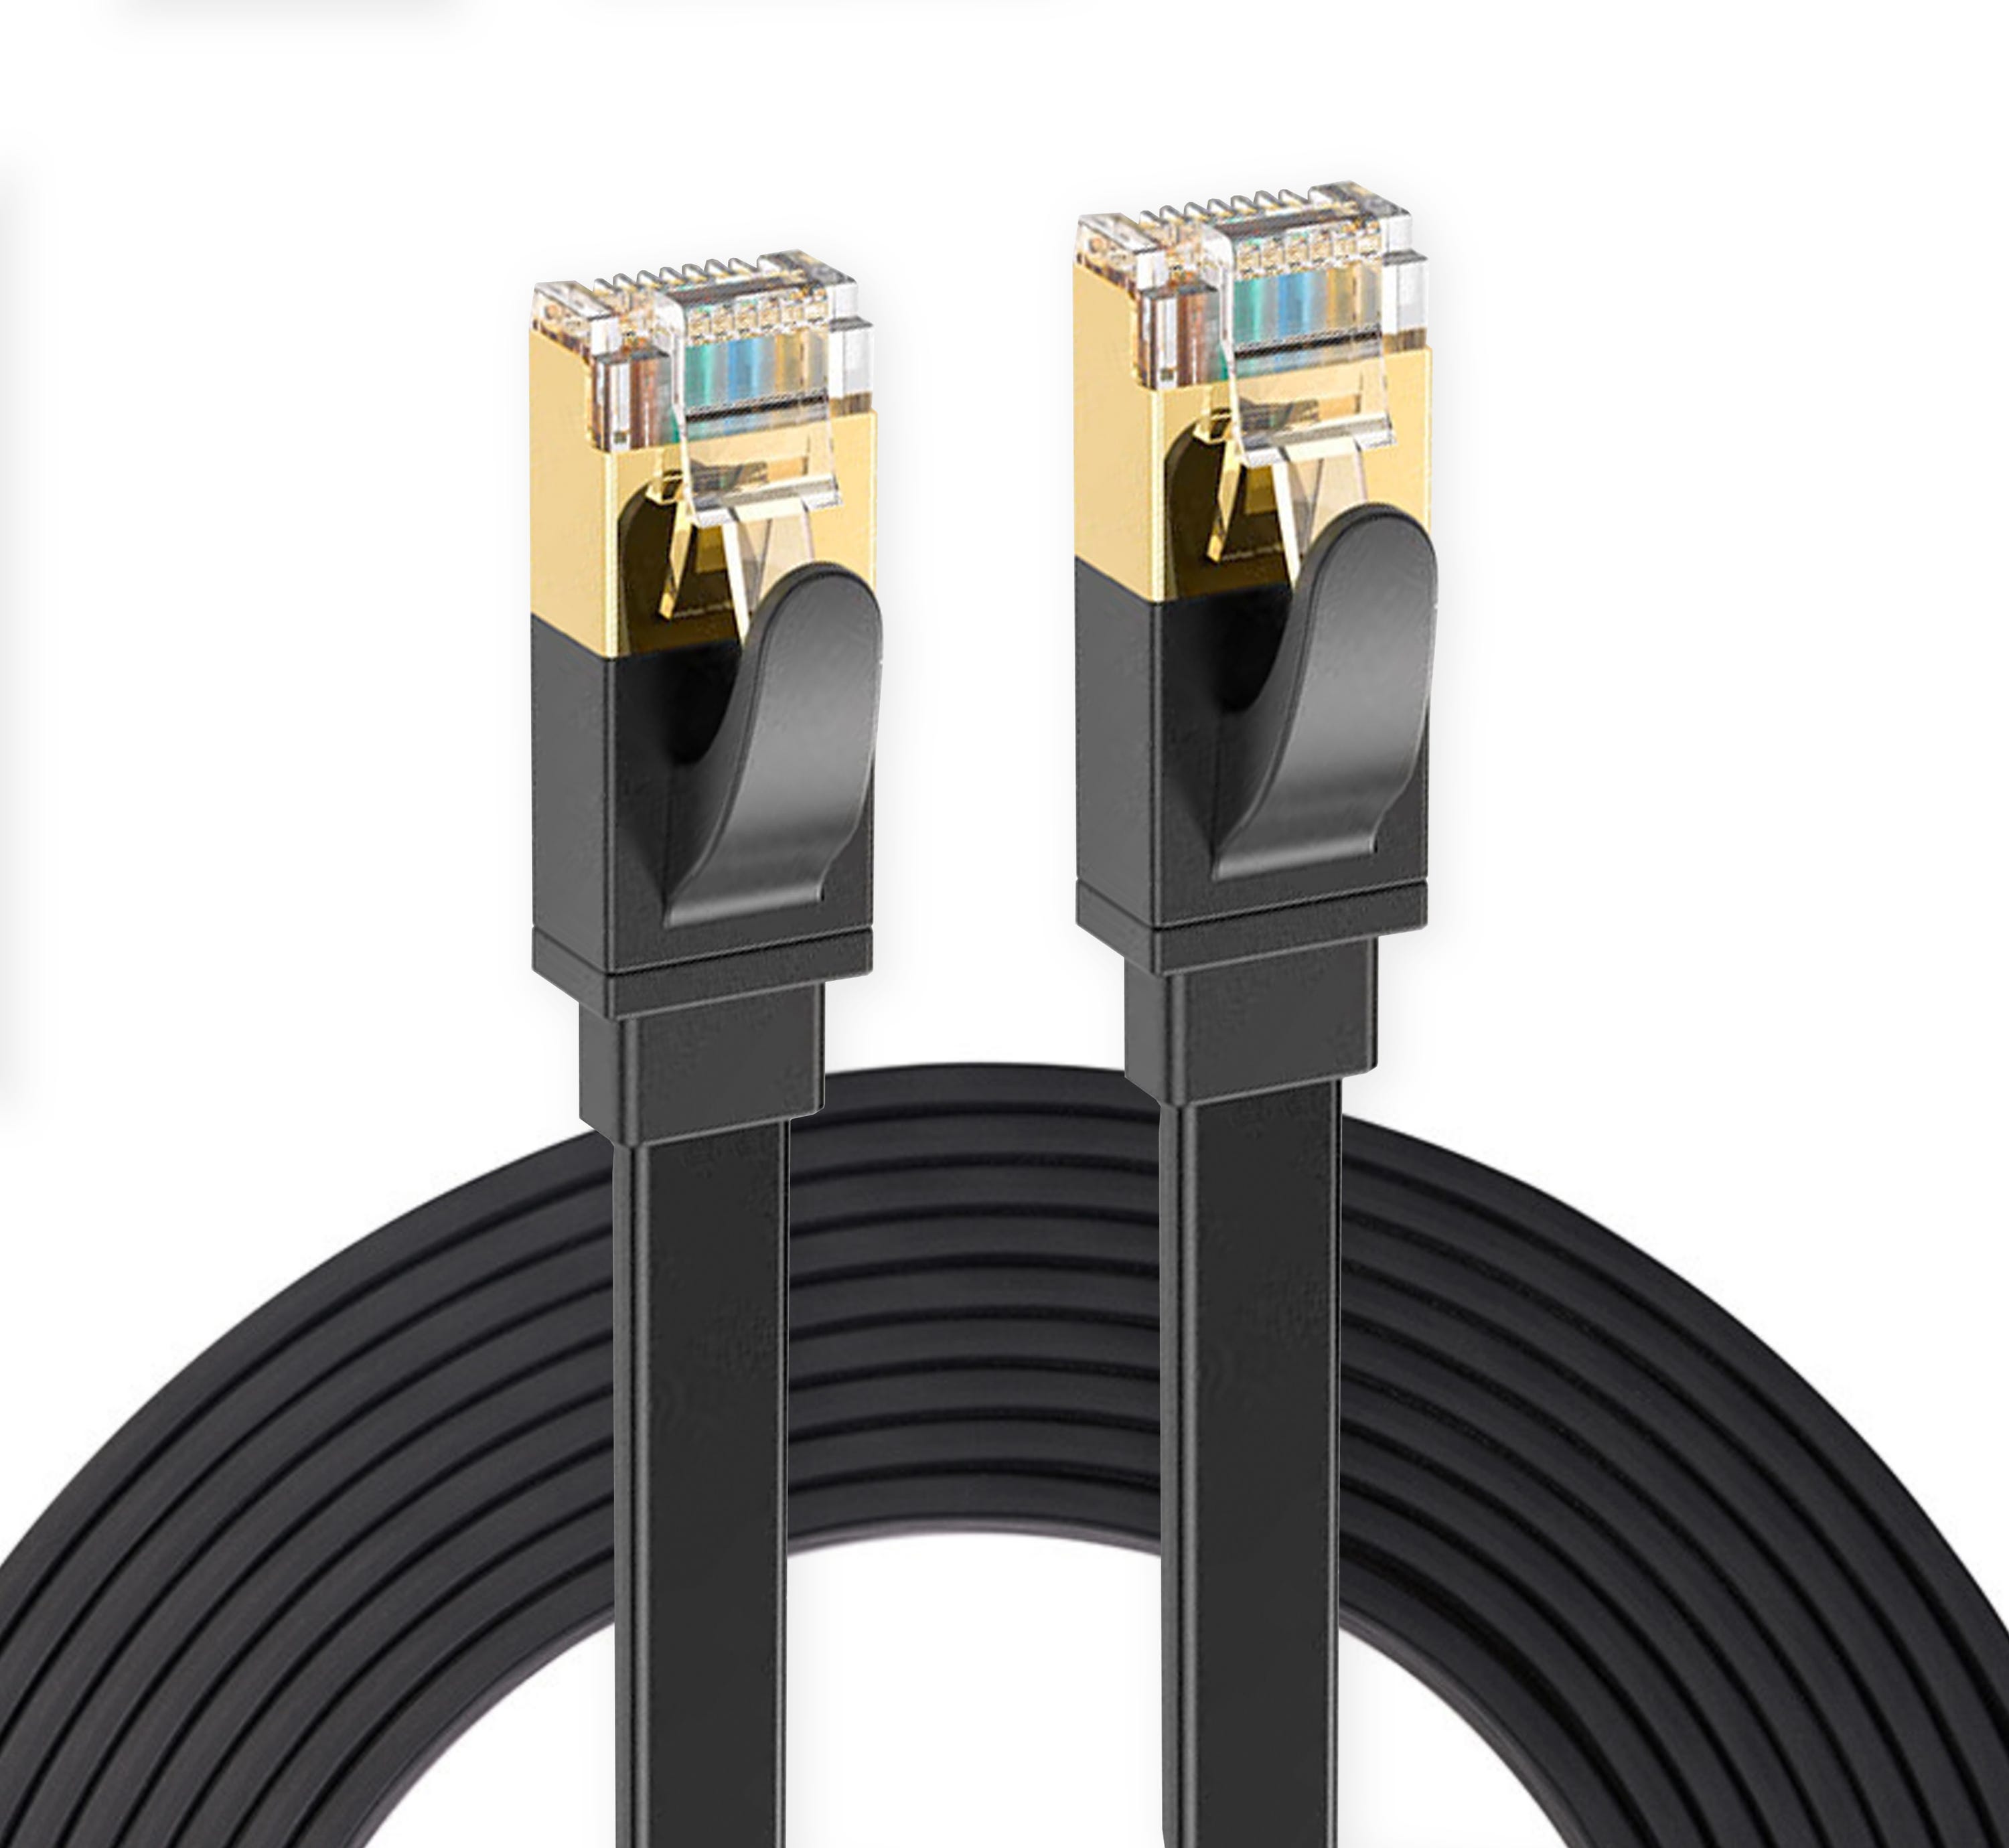 Elfcam® - 10m CAT7 Cable Reseau Ethernet RJ45, Cat 7 STP 100% Cuivre, Cable  Plat, 32 AWG, Noir (10M)